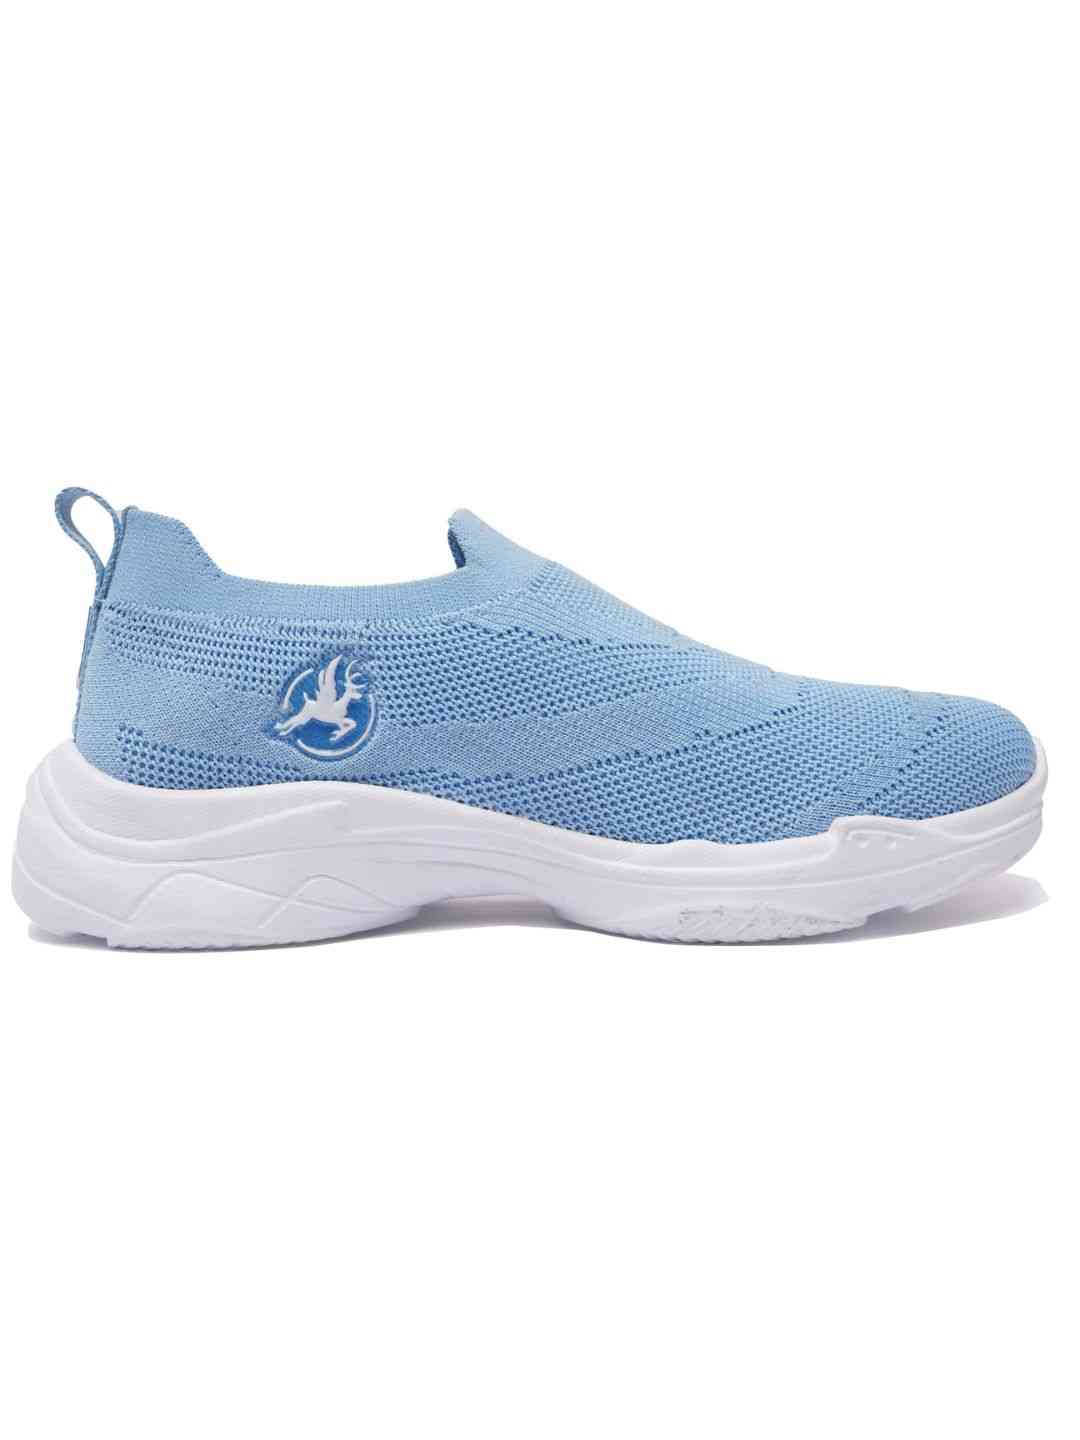 Trenz Marina Sky Blue Women Walking Shoes